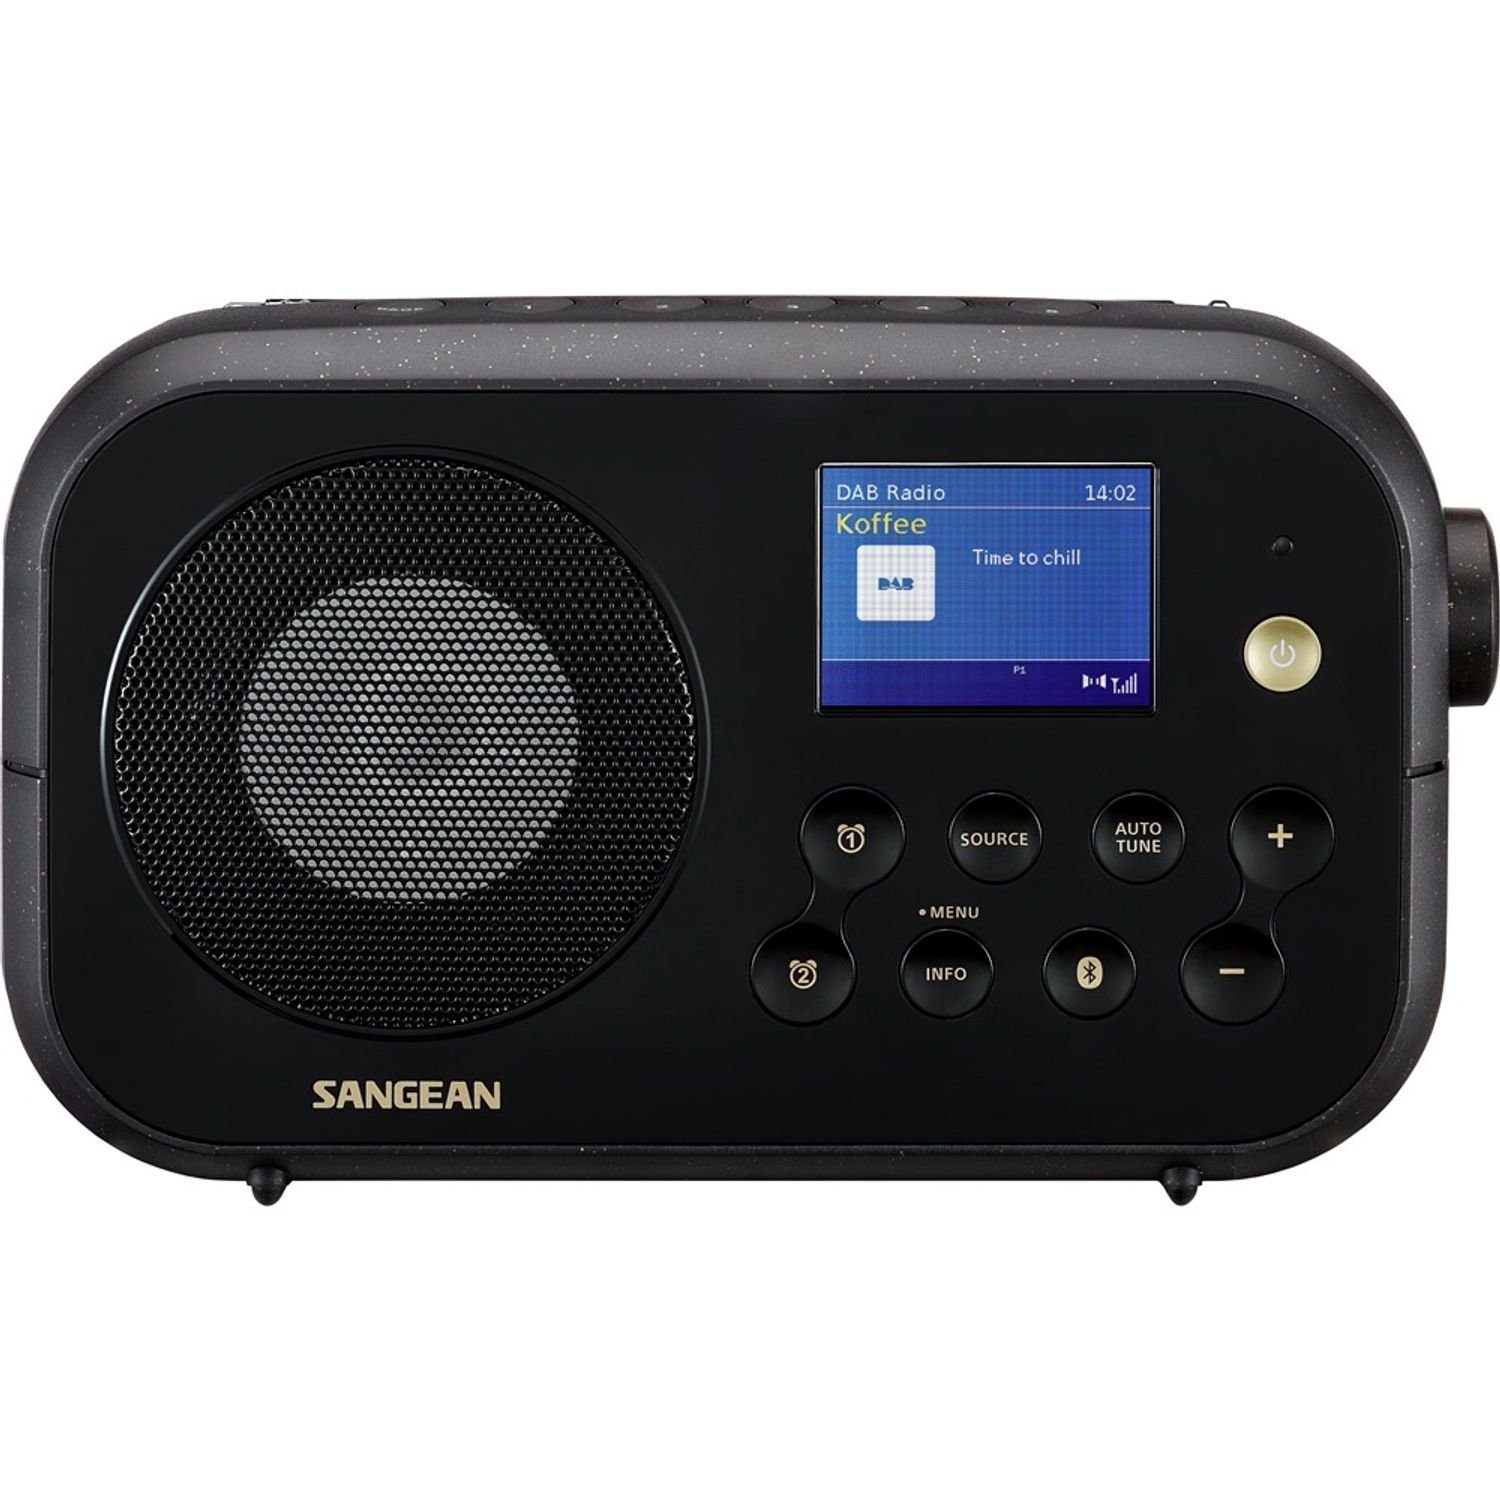 (DAB) Digitalradio (DAB) mit Sangean Bluetooth-Empfänger DPR-42BT / DAB+ Tragbarer FM-RDS schwarz